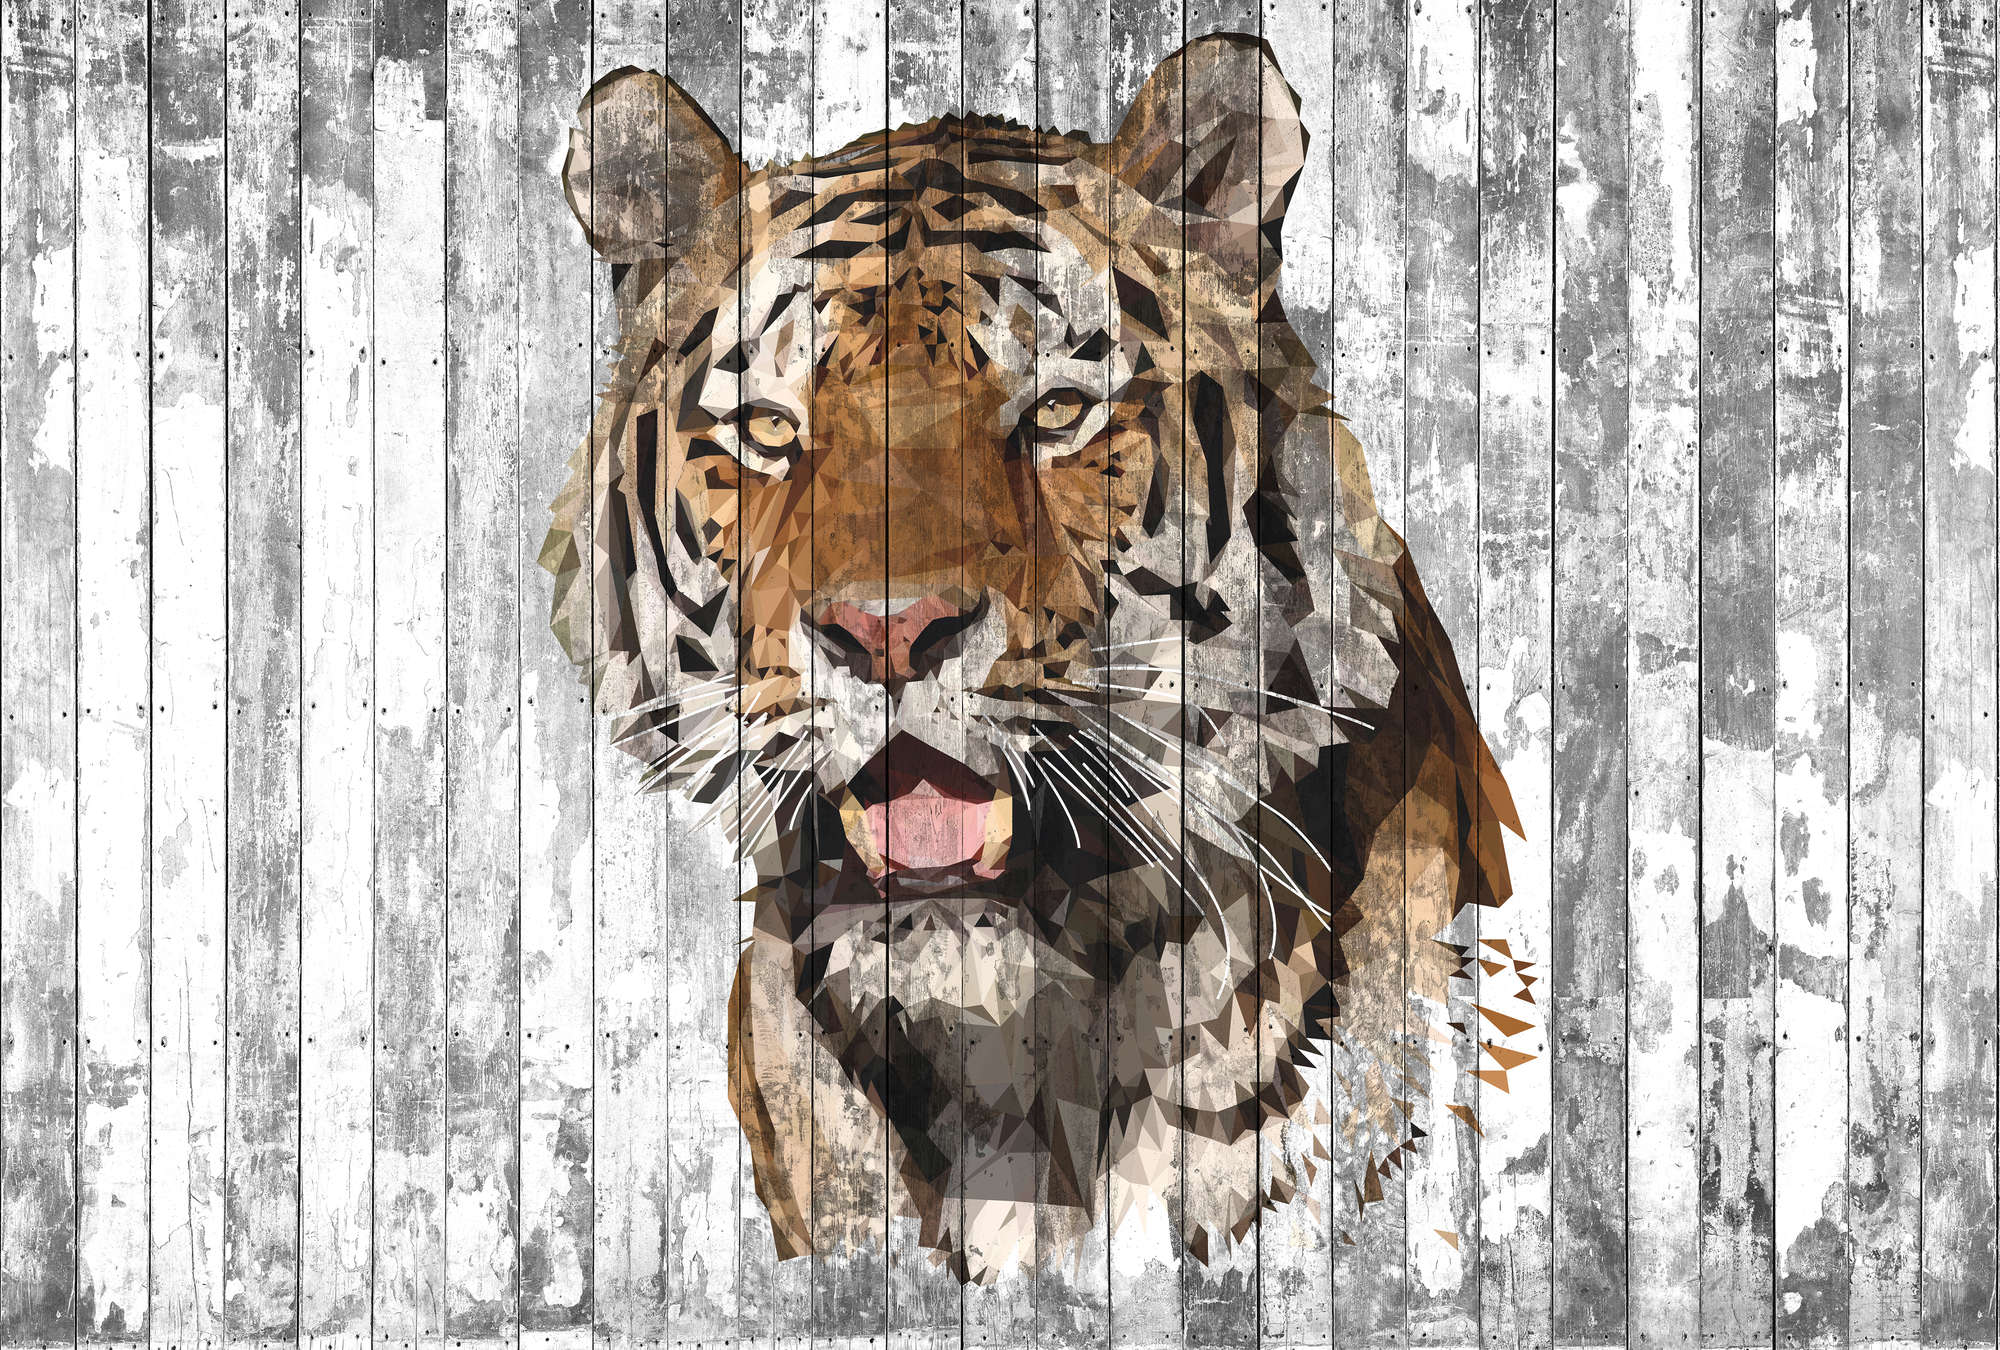             Papel Pintado Estilo Polígono Tigre para Habitación Juvenil - Marrón, Gris, Blanco
        